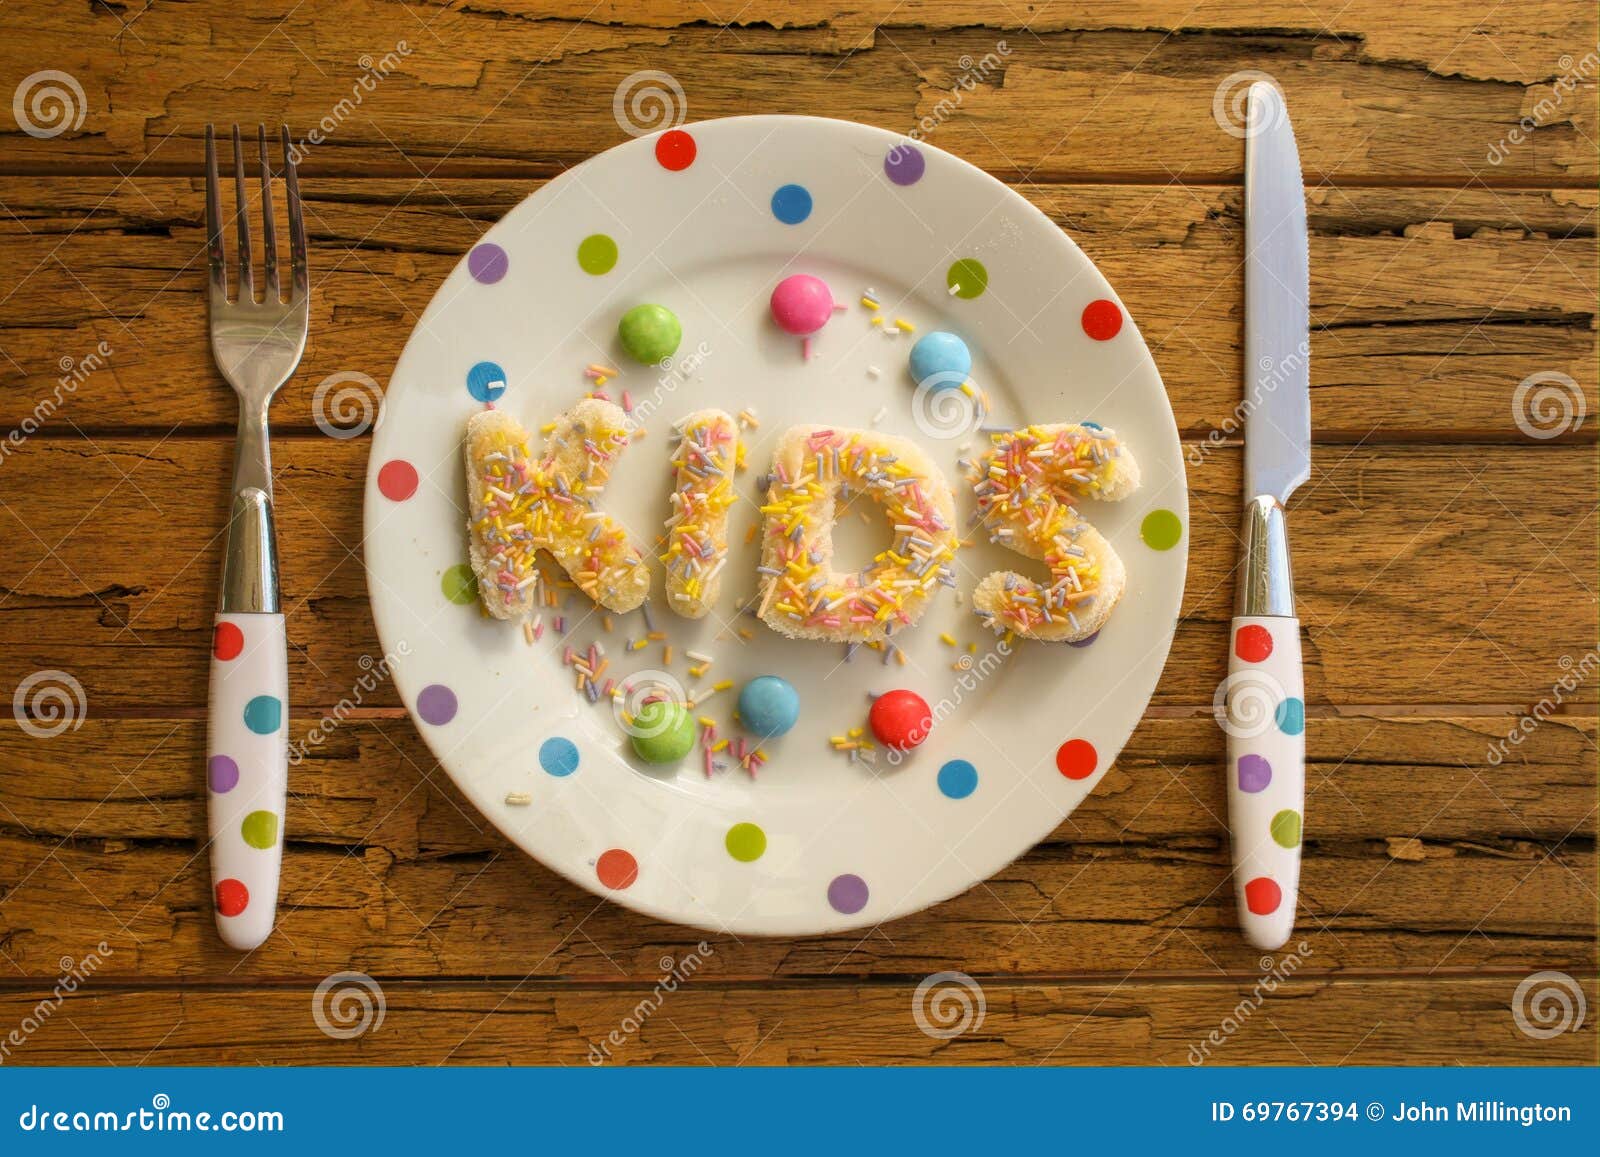 Kinderpartei-Lebensmittel. Das Wort KINDER geschrieben in Kuchen auf eine beschmutzte Platte und ein Tafelsilber auf einen rauen Holztisch